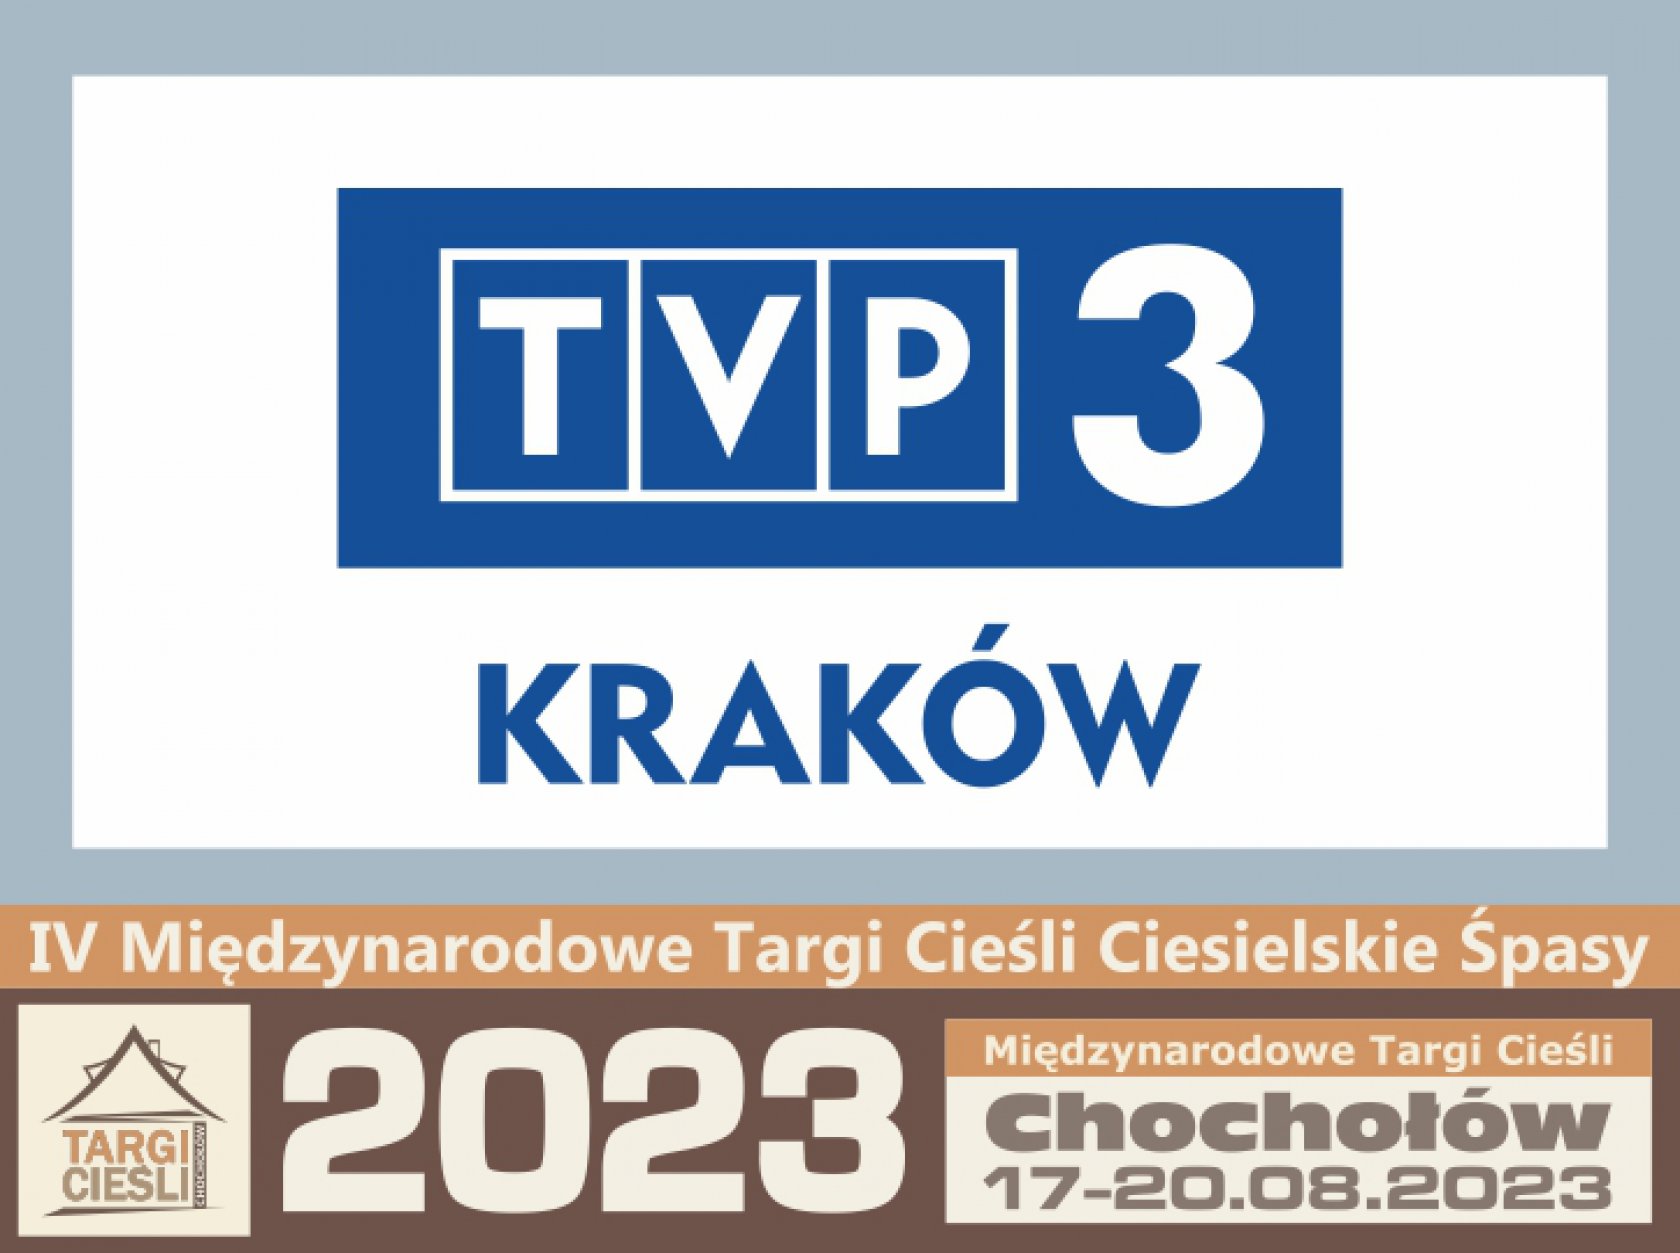 TVP3 KRAKÓW pokaże wydarzenia w Chochołowie zdjęcie